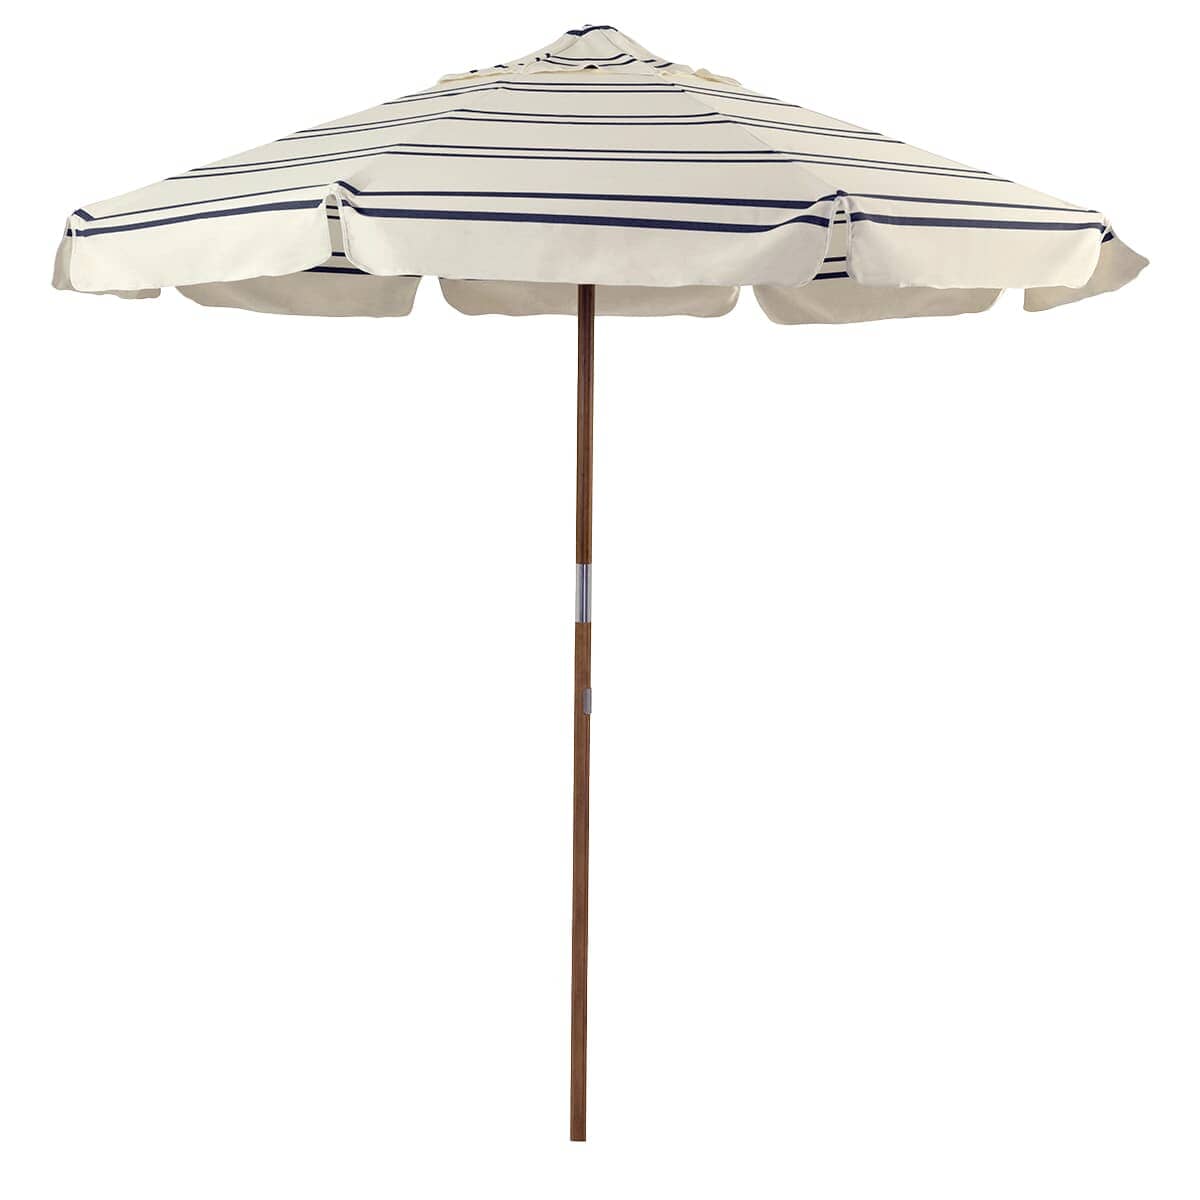 Malibu Black Stripe Market Umbrella in a studio